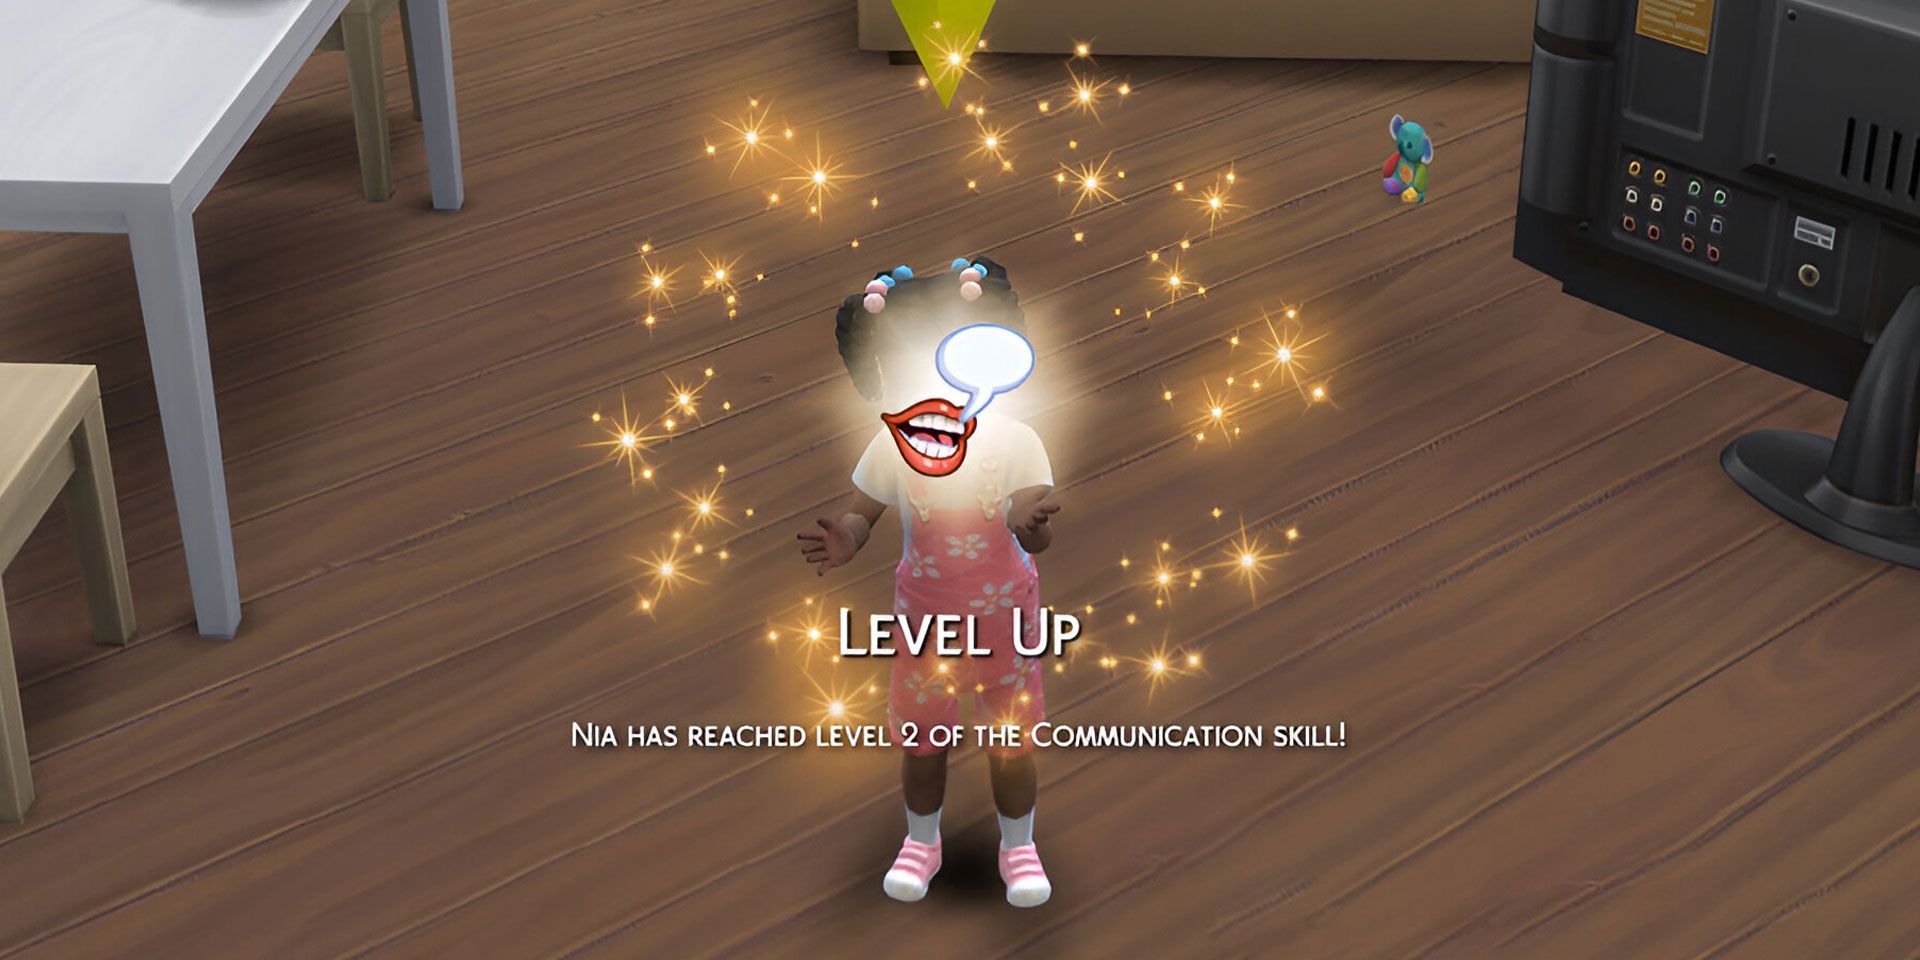 在《模拟人生4》中升级幼儿沟通技能时的横幅。